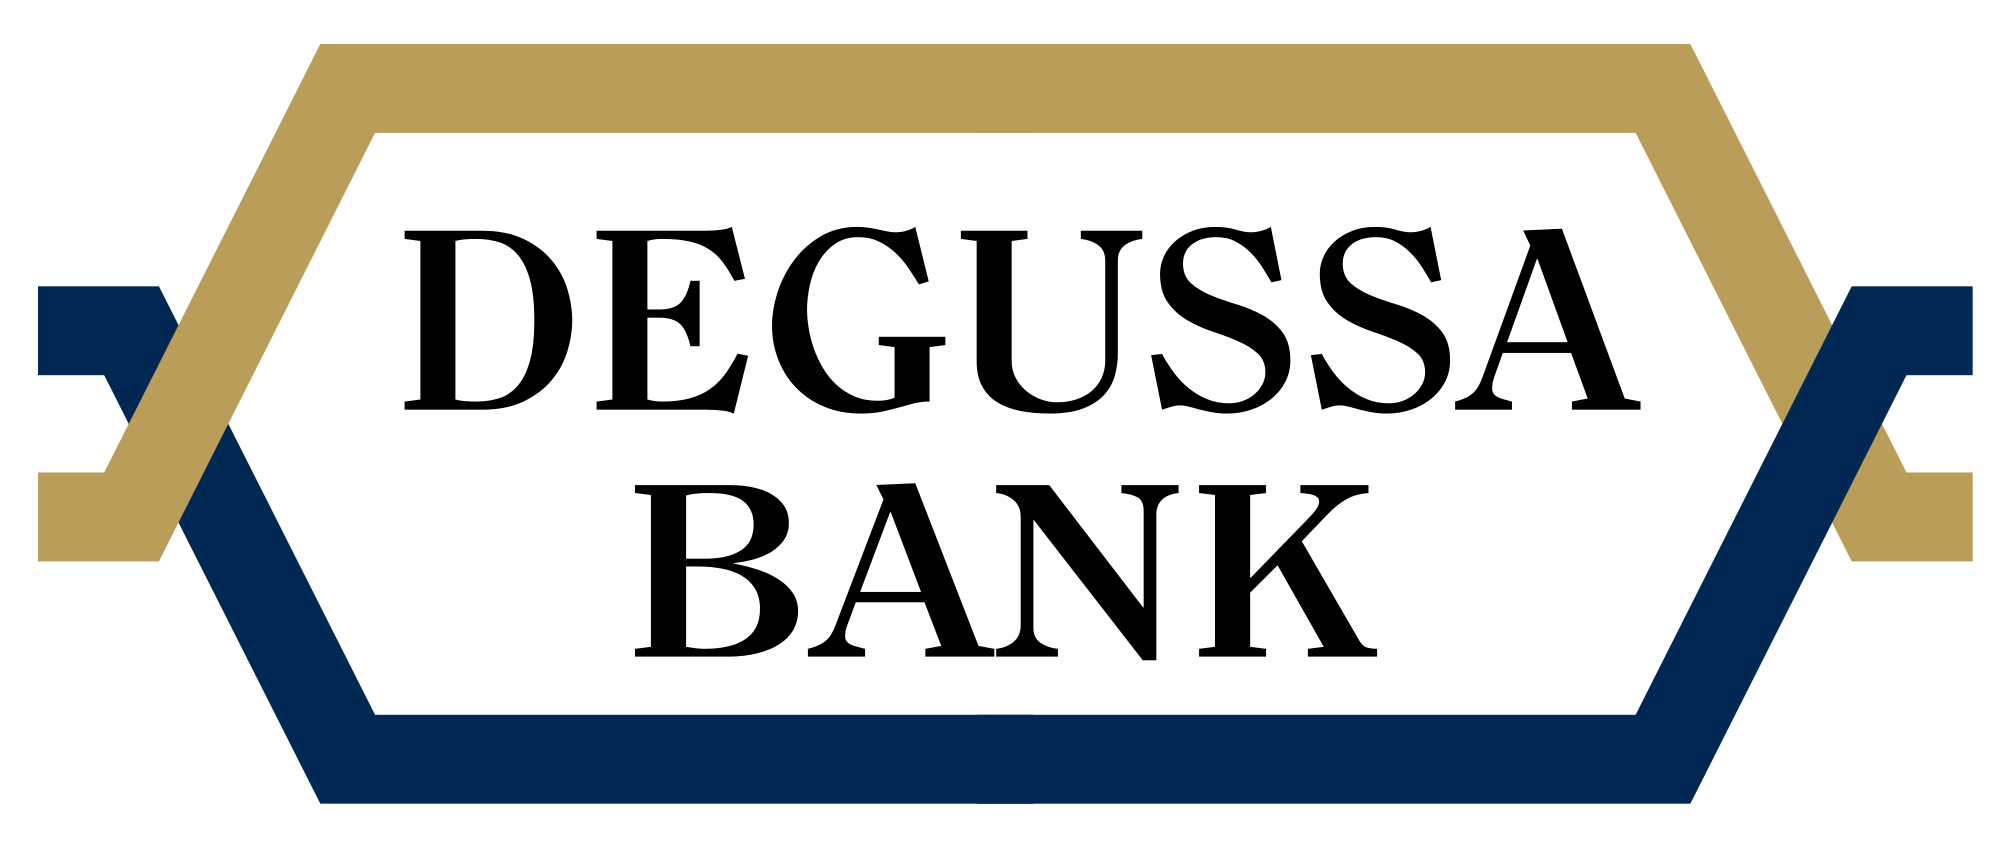 Bild der Degussa Bank